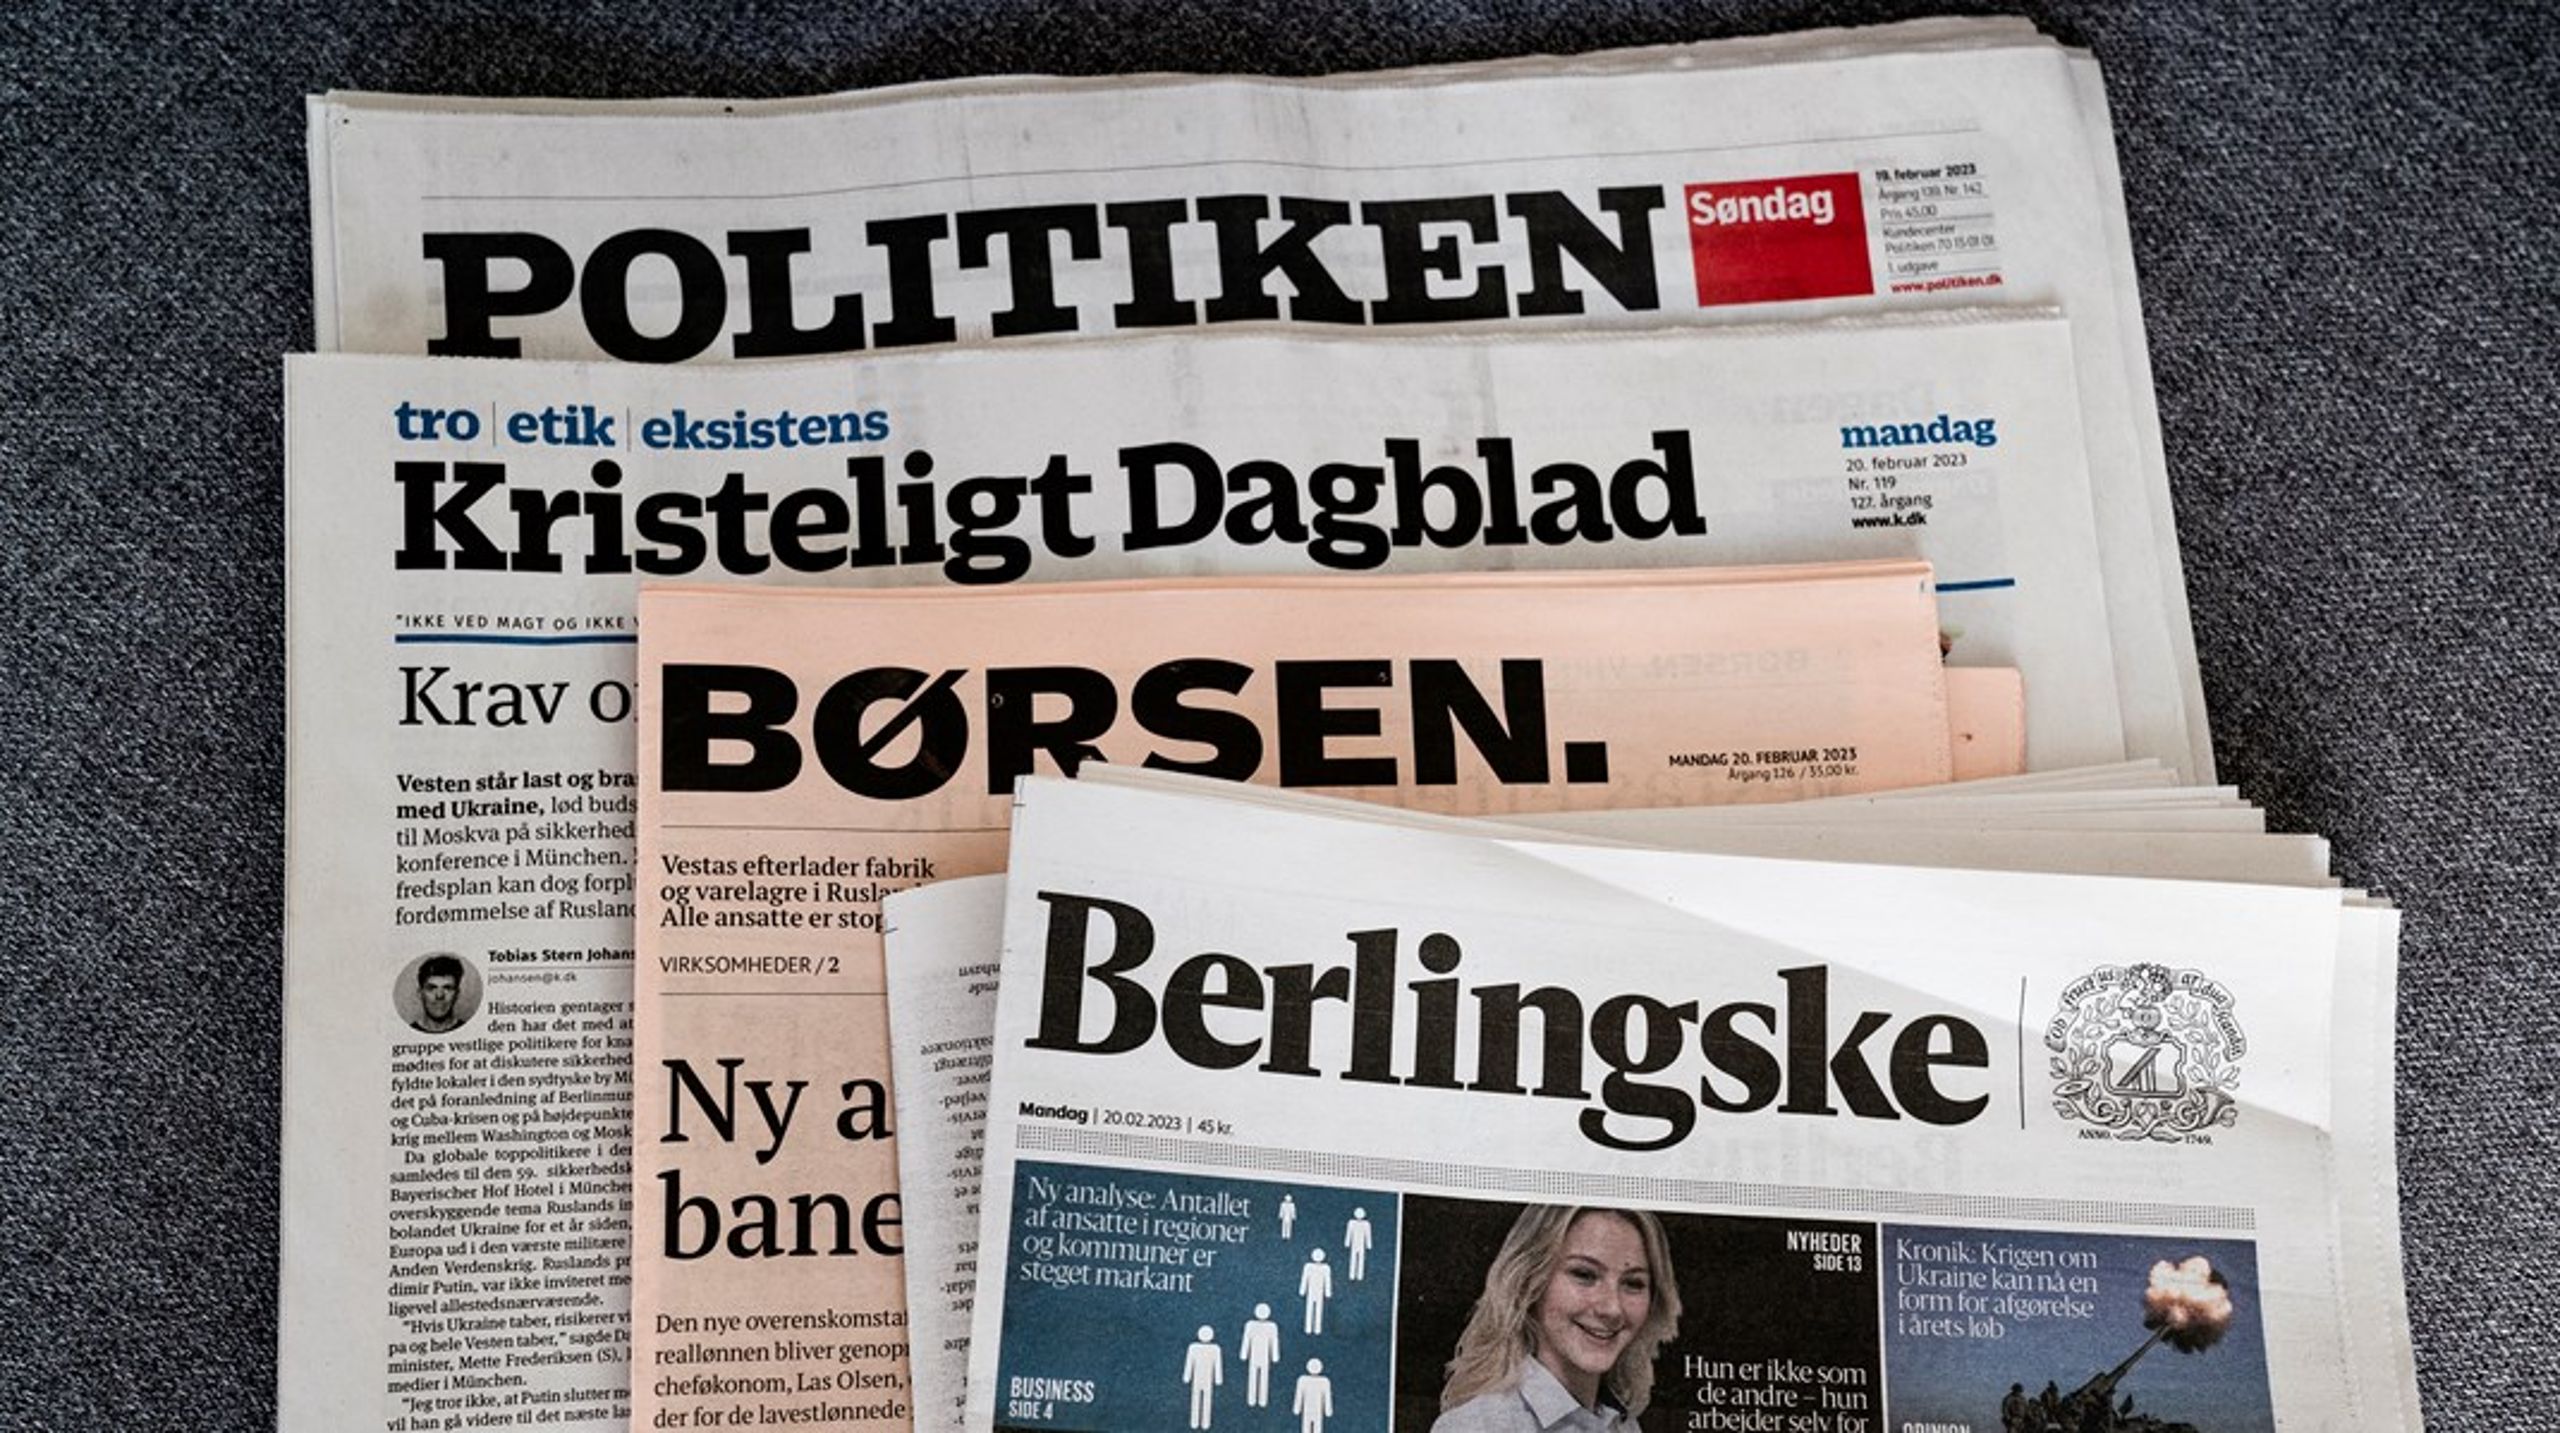 Ved at lytte og inddrage målgrupper mere aktivt i journalistikken og søge nuancer og løsninger, kan de traditionelle medier vende udviklingen med nedgang i nyhedsforbruget blandt danskerne, skriver Nanna Holst.&nbsp;<br><br>